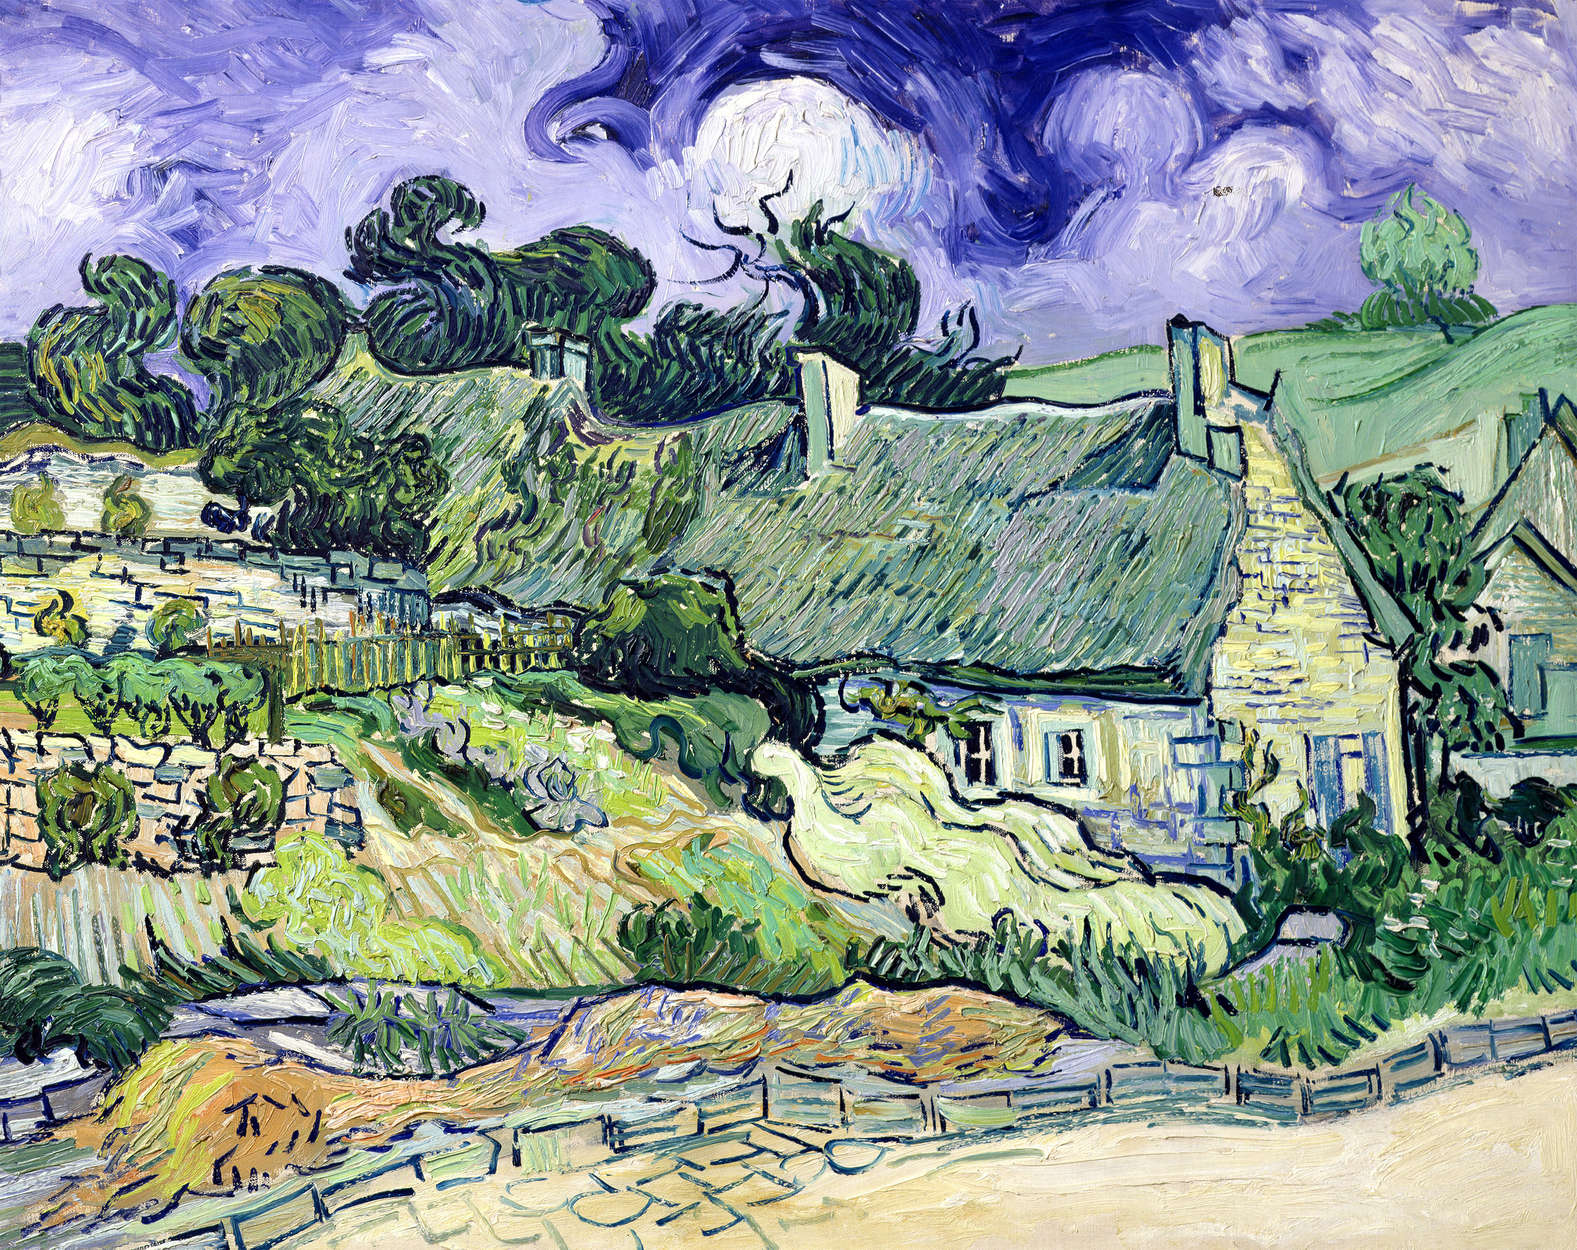             Huizen met rieten daken in Cordeville" muurschildering van Vincent van Gogh
        